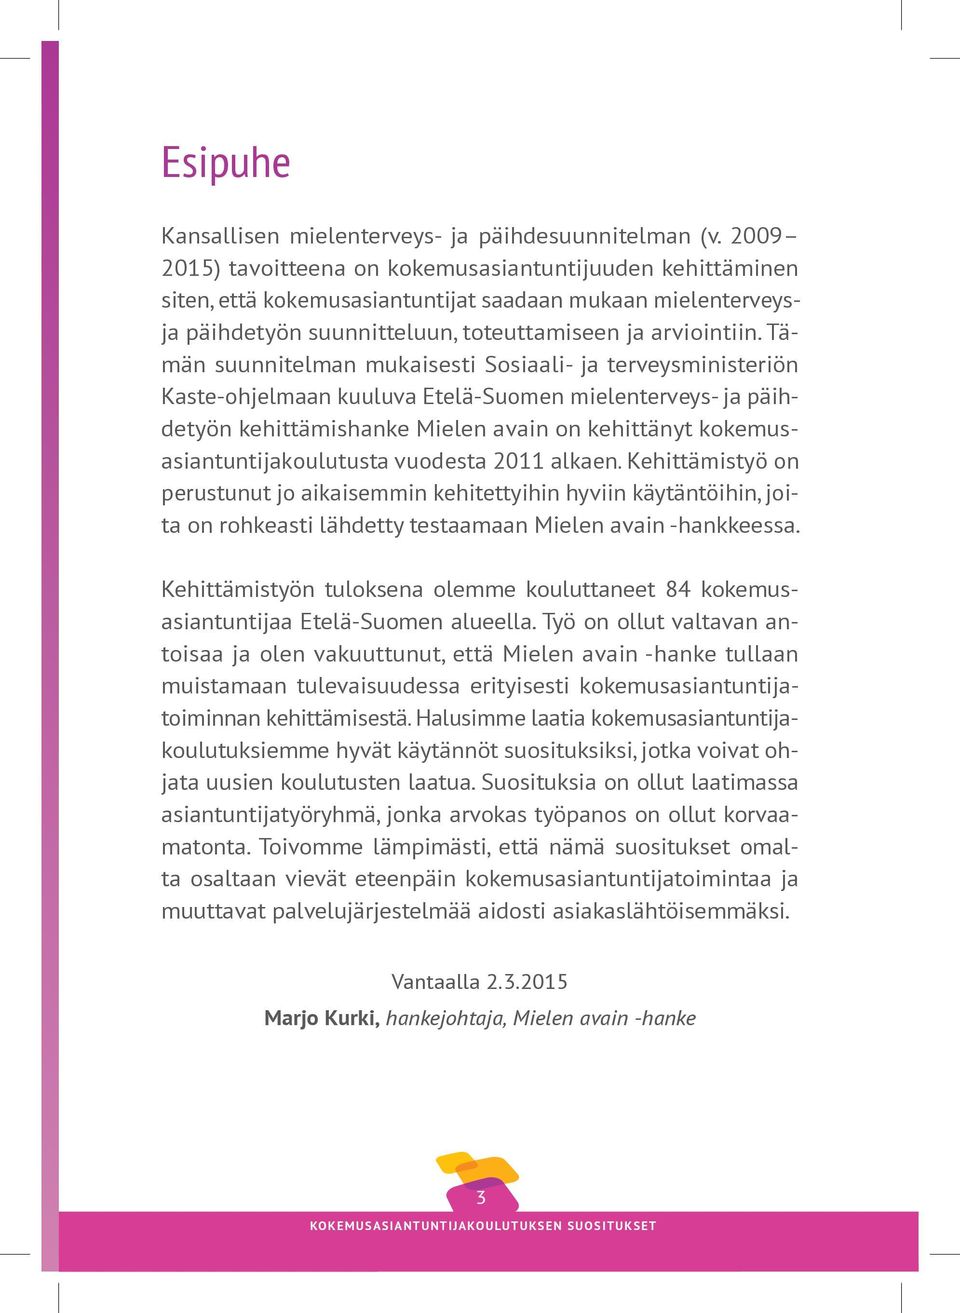 Tämän suunnitelman mukaisesti Sosiaali- ja terveysministeriön Kaste-ohjelmaan kuuluva Etelä-Suomen mielenterveys- ja päihdetyön kehittämishanke Mielen avain on kehittänyt